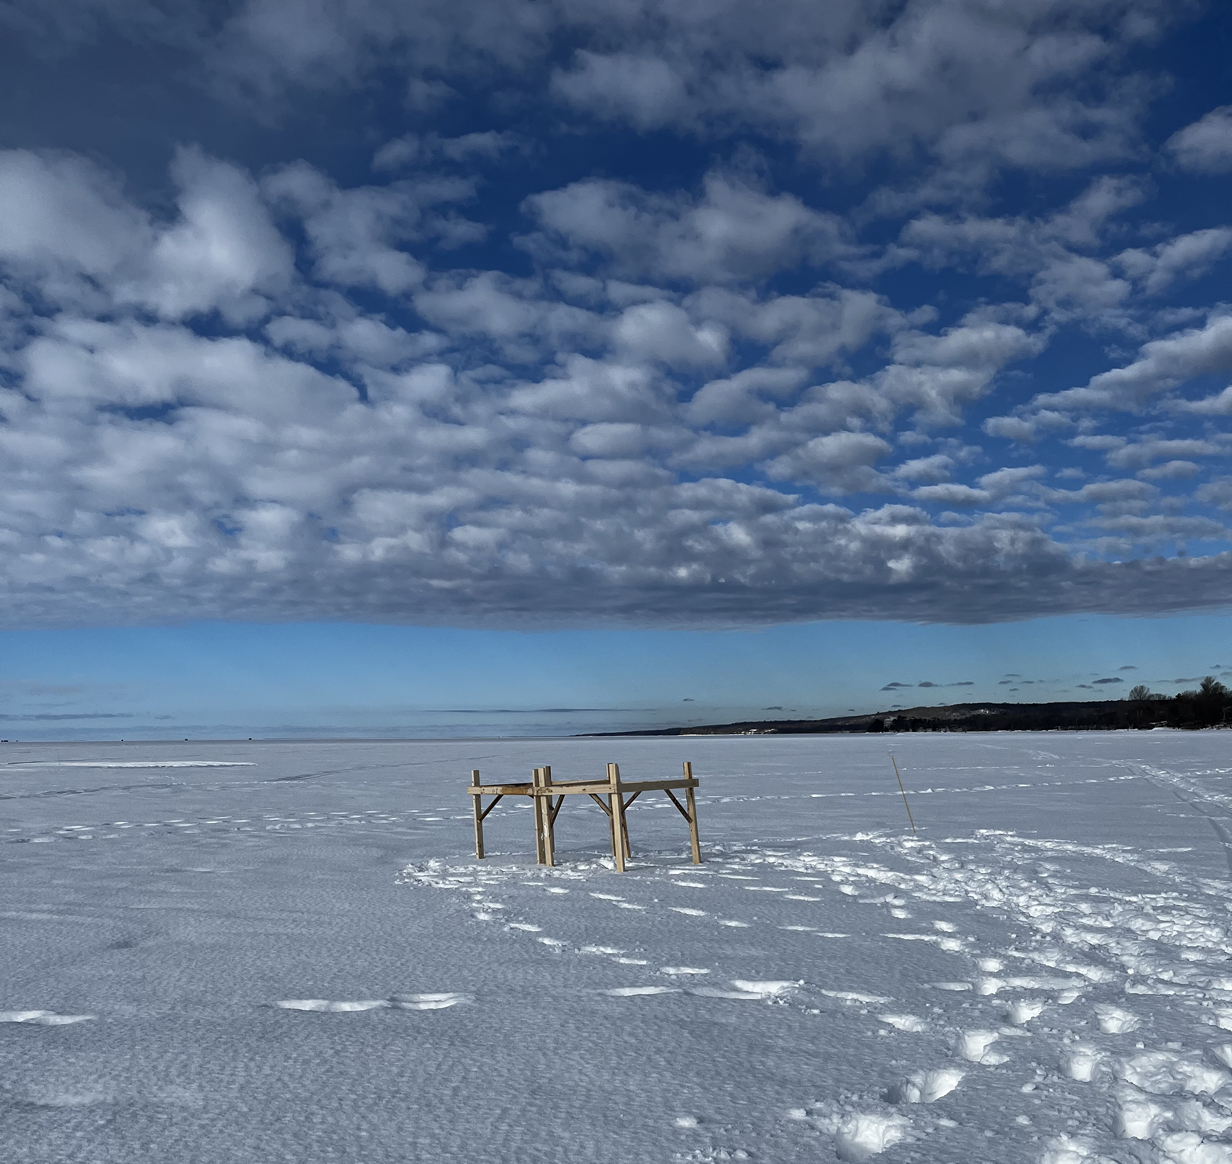 Une base de bois repose sur le lac gelé et enneigé. Des nuages en forme de boules de coton parsèment un ciel bleu clair.